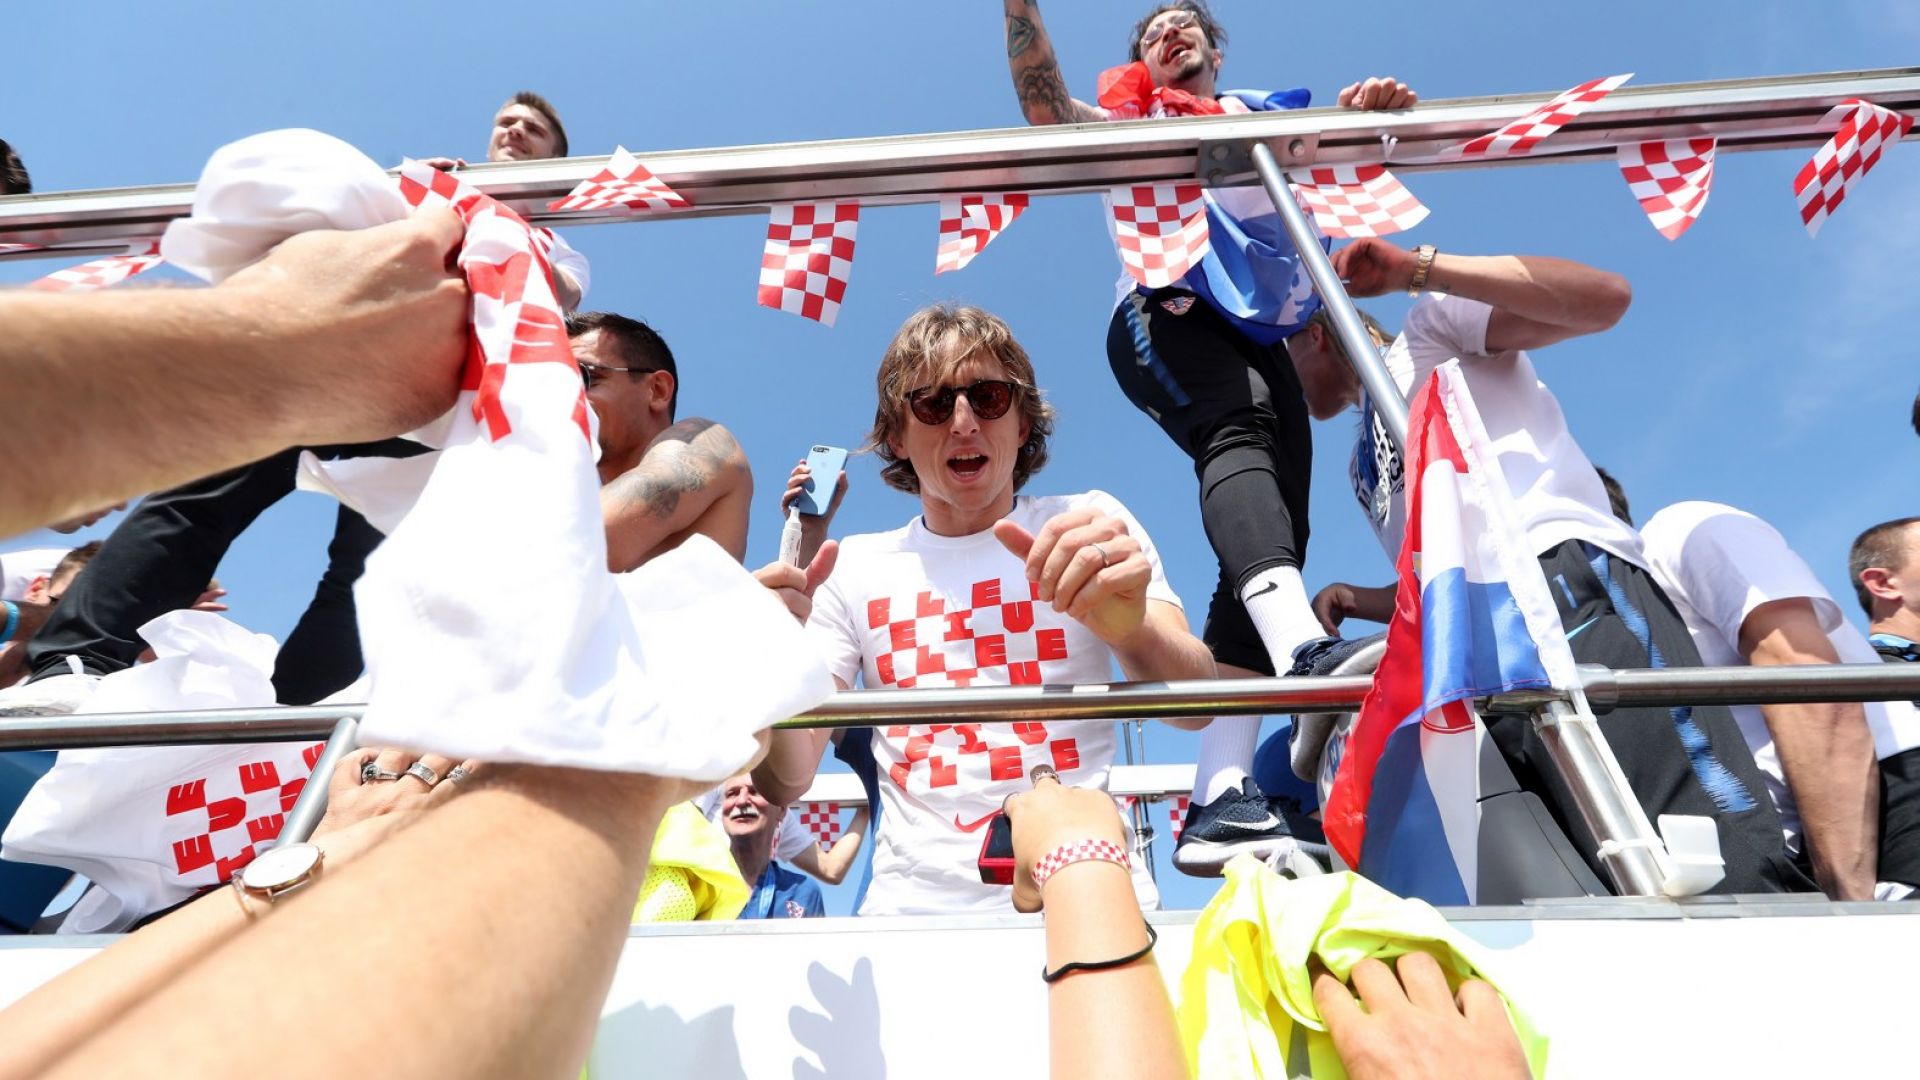 "Хърватите даряват 23 милиона евро за благотворителност" се оказа фалшива новина